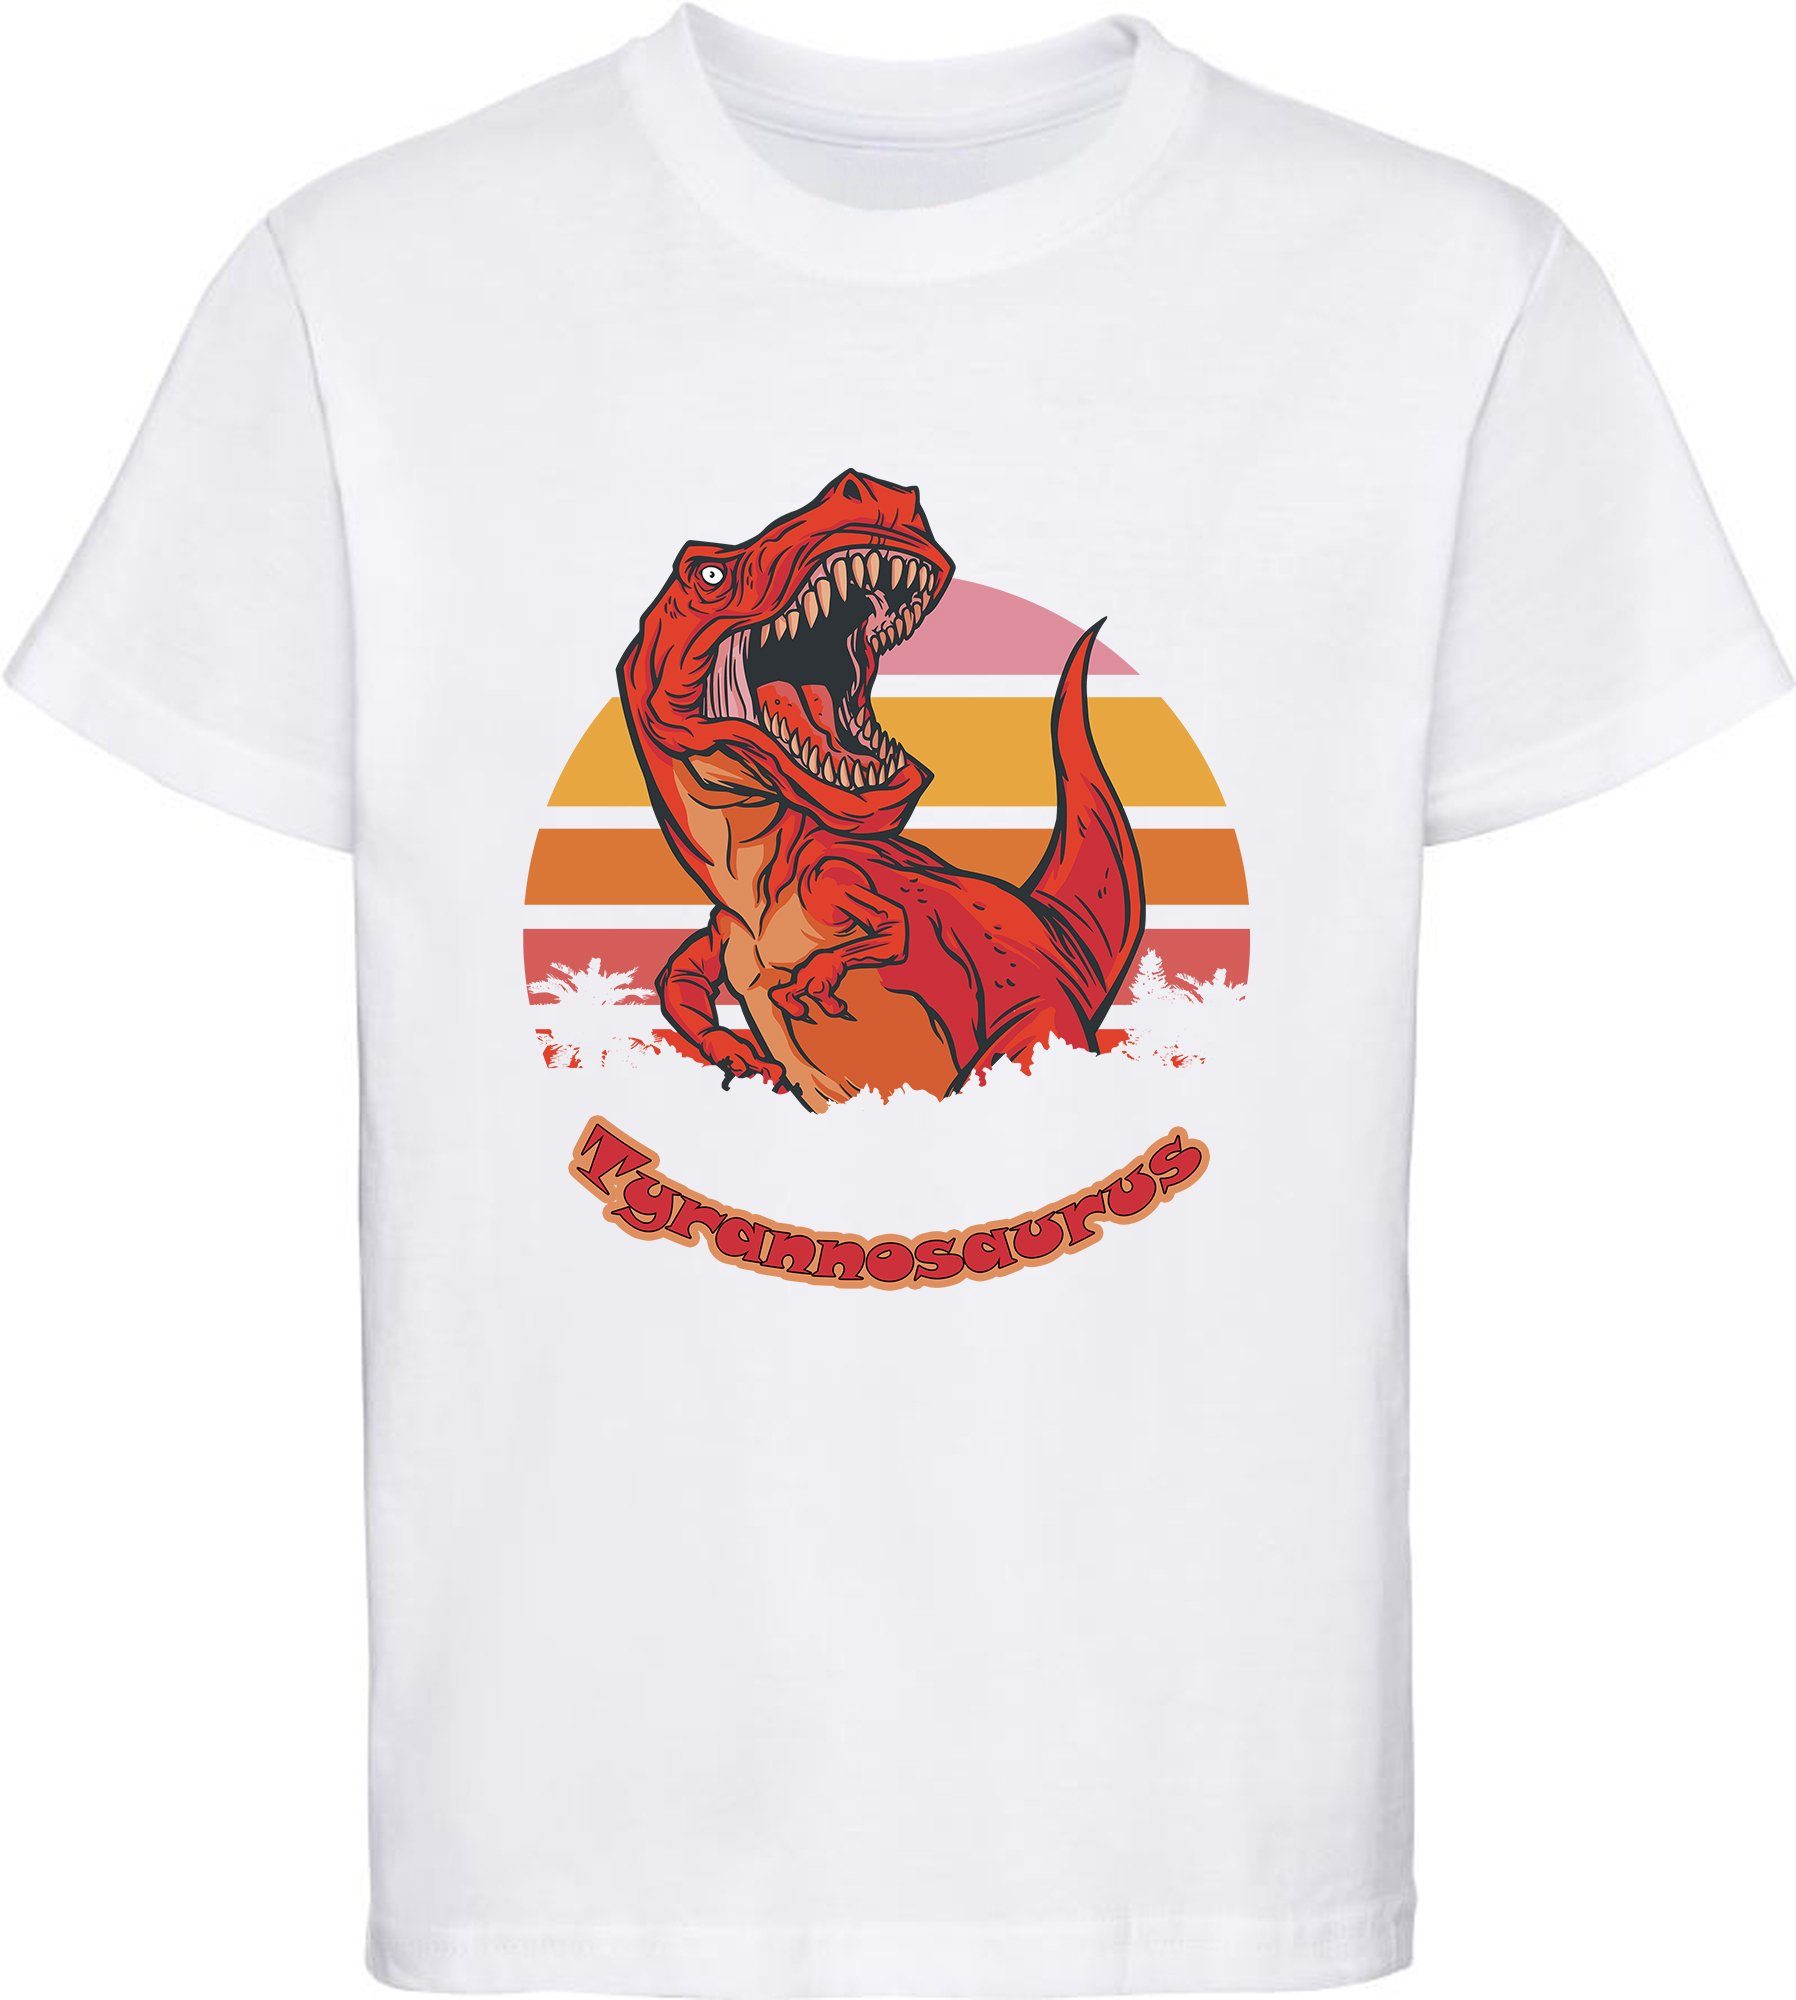 MyDesign24 Print-Shirt Baumwollshirt mit i100 roten Dino, schwarz, mit brüllendem weiß, Kinder weiss rot, bedrucktes blau, T-Rex T-Shirt